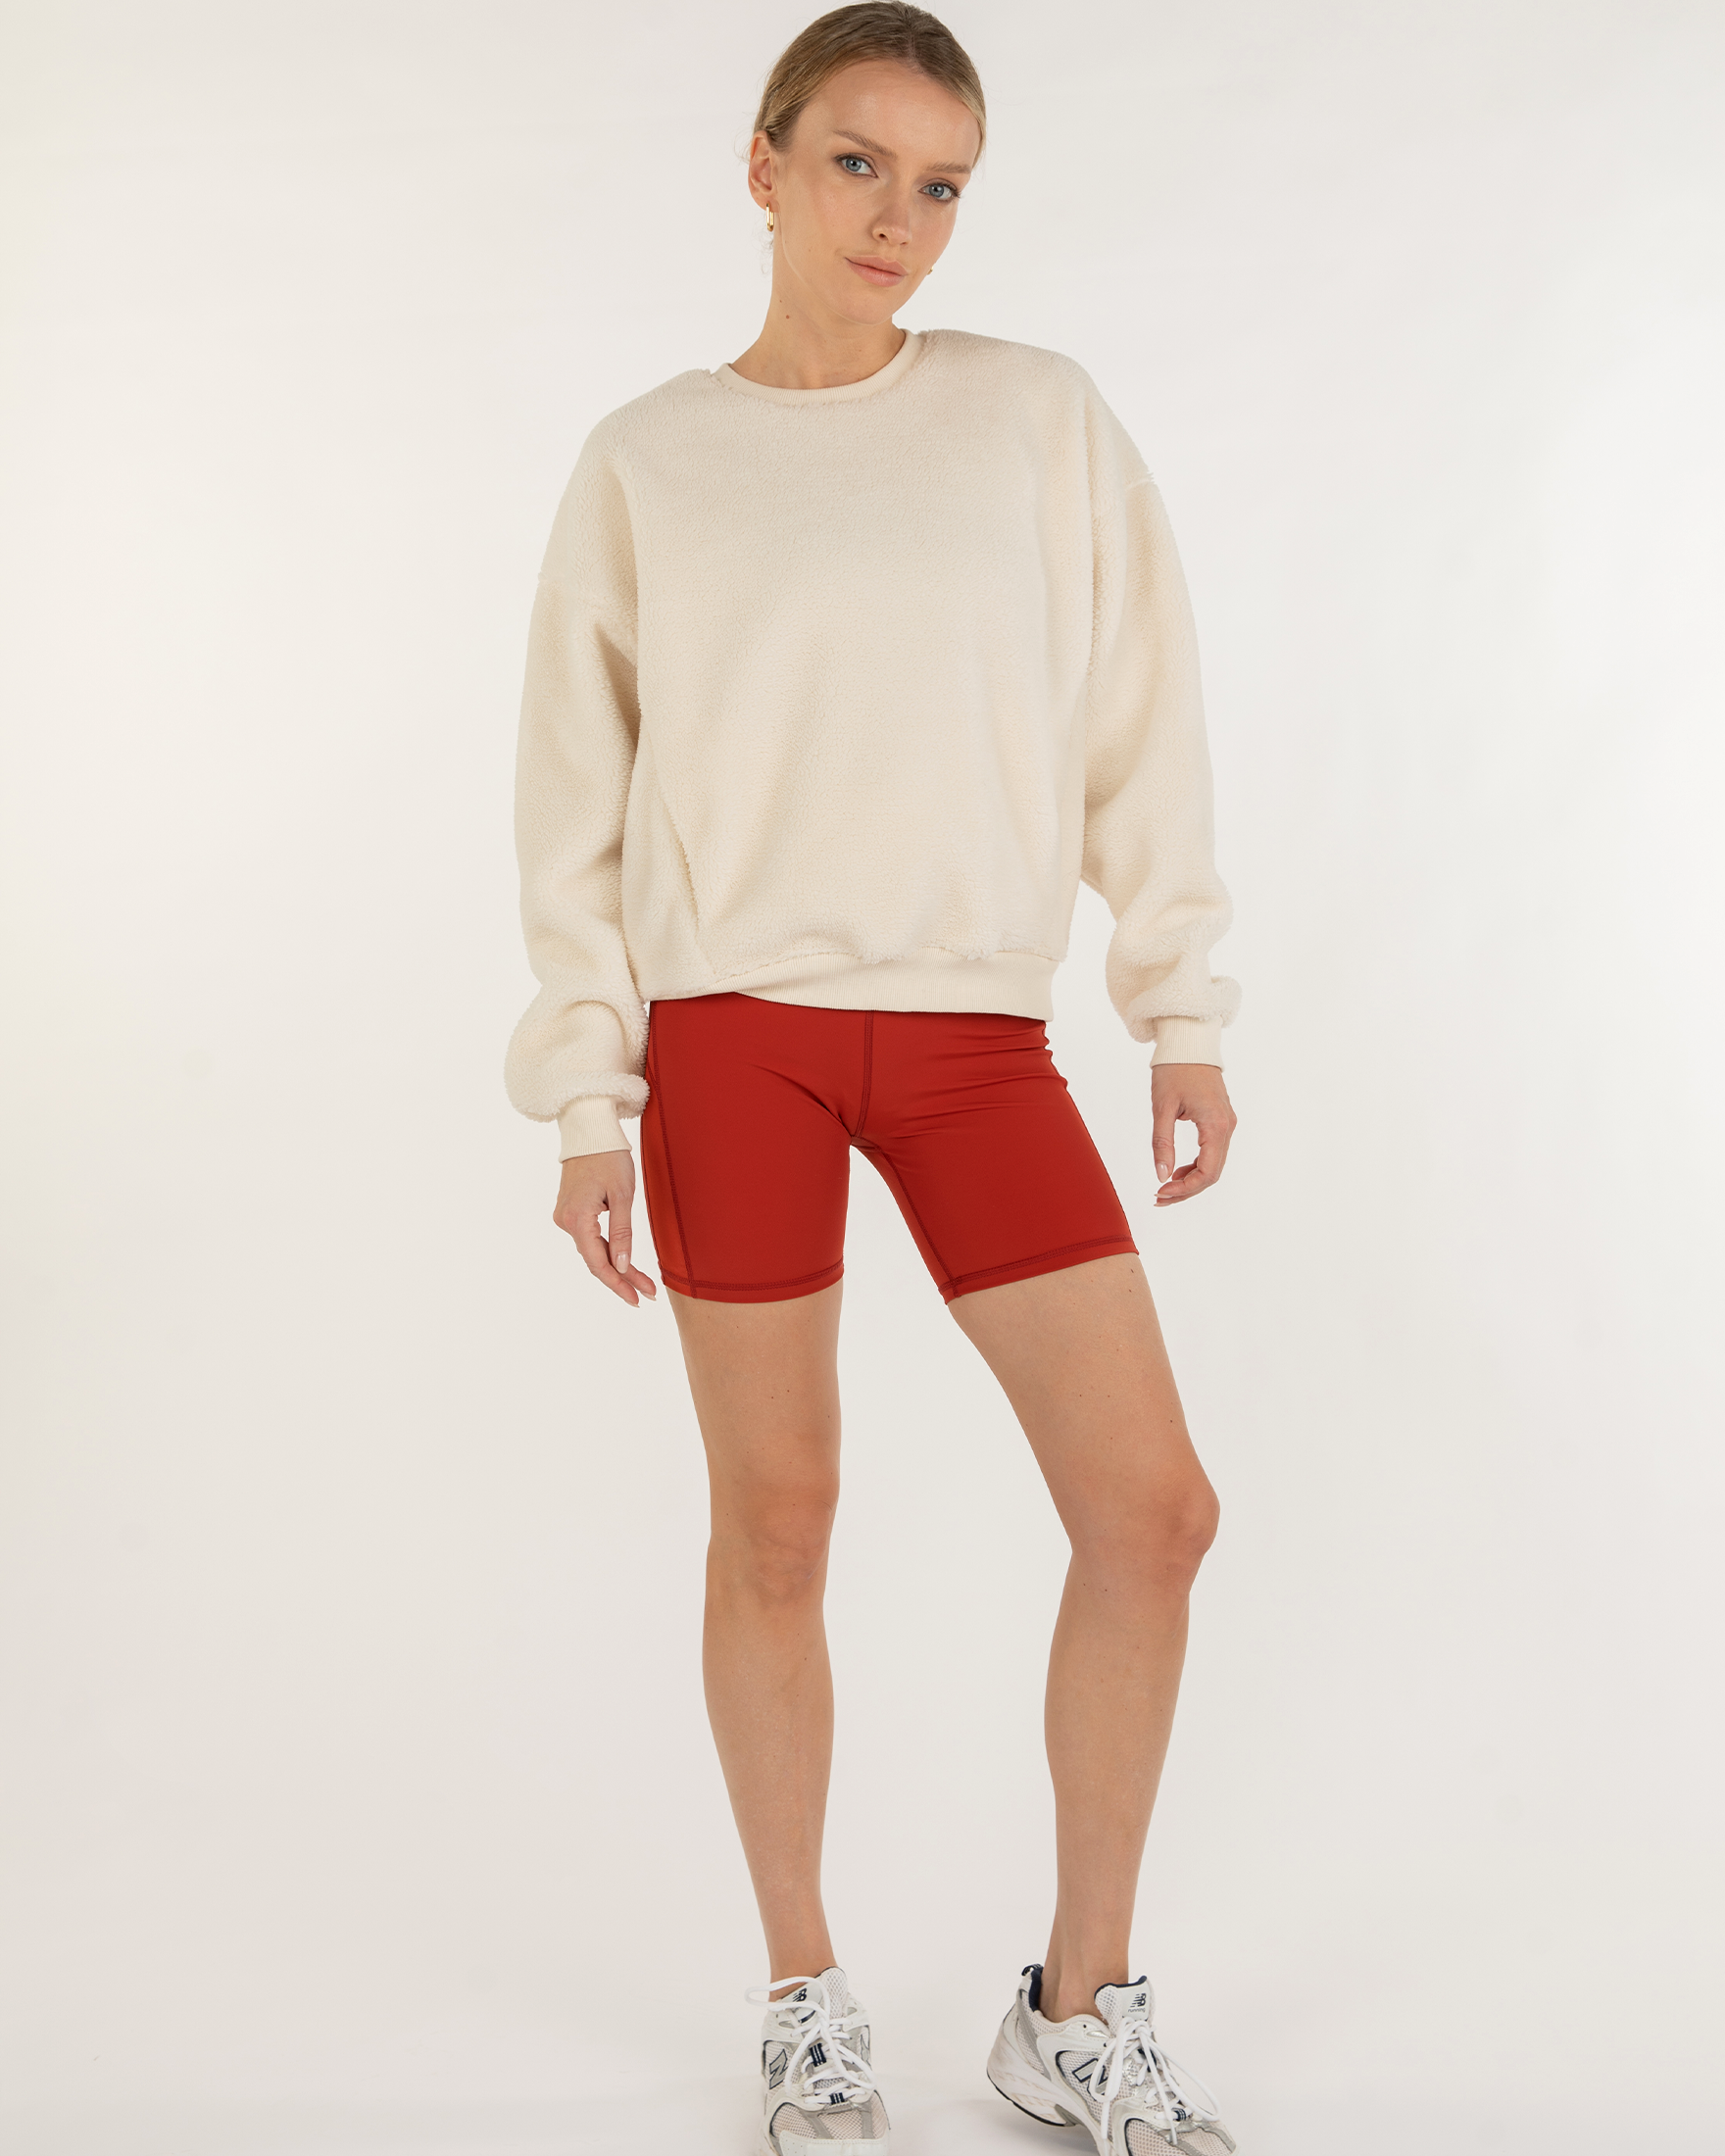 Teddy Sherpa Sweatshirt Micro-Fleece Lined - Guy Christopher 